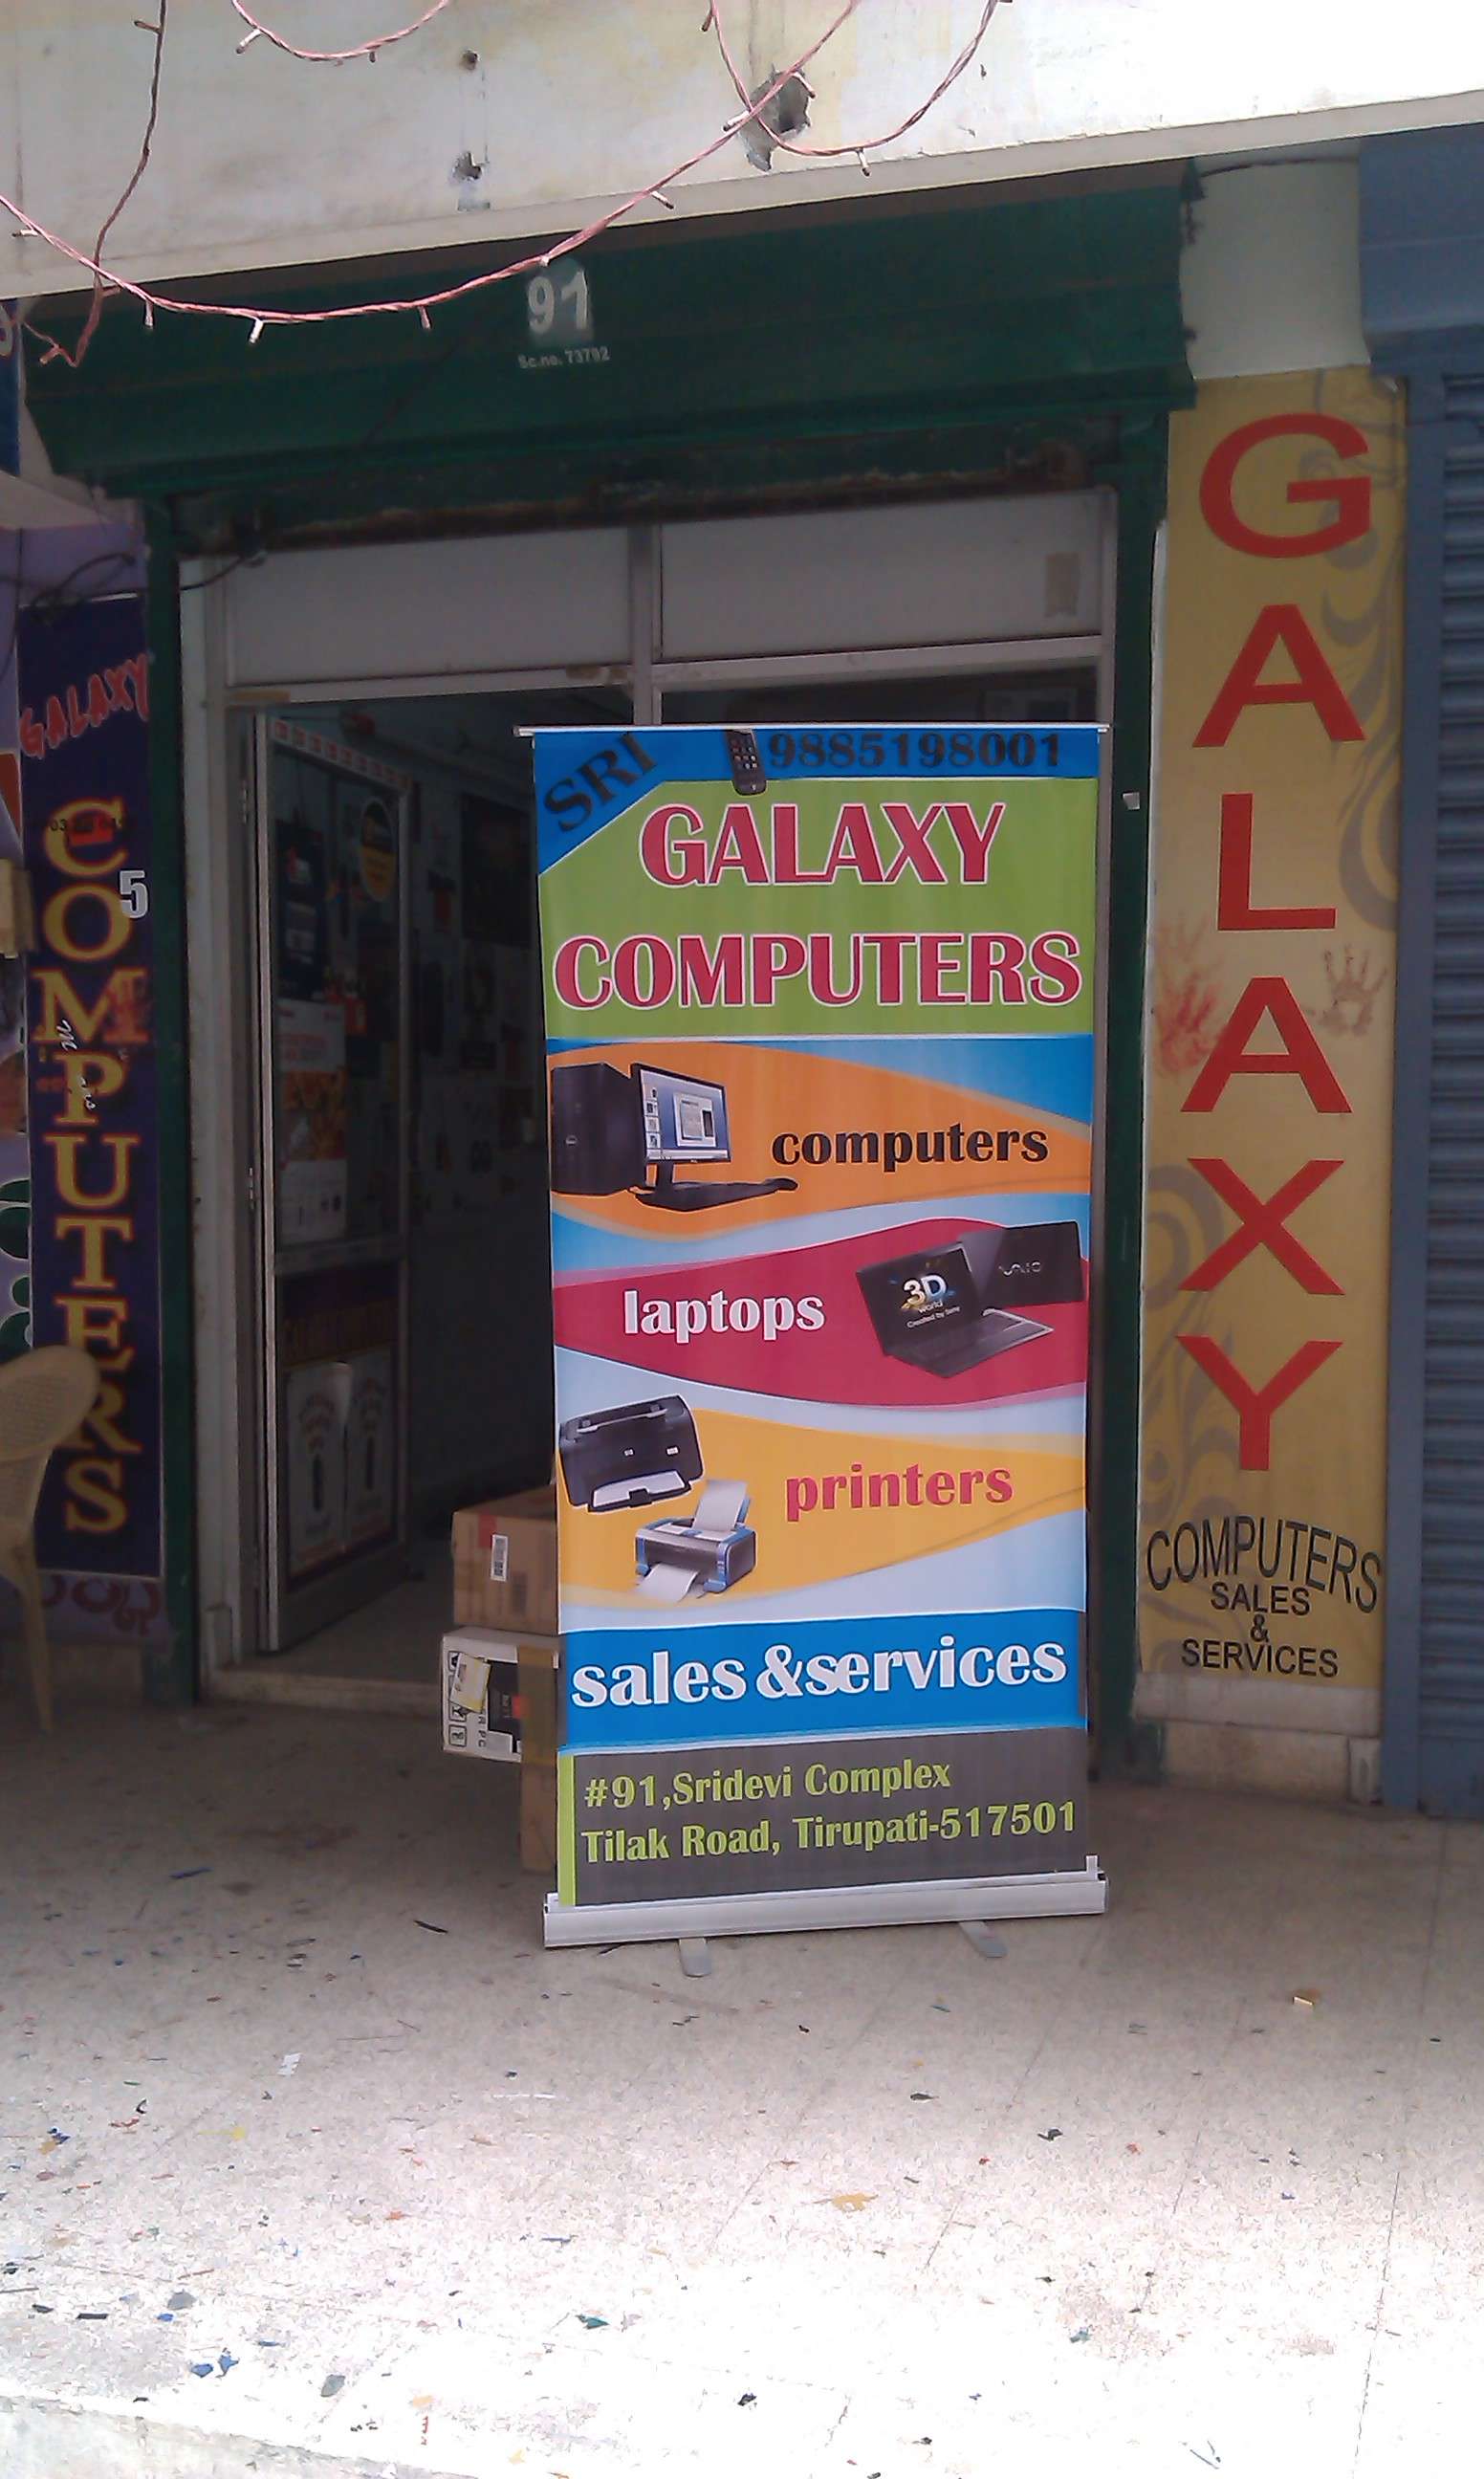 Sri Galaxy Computers